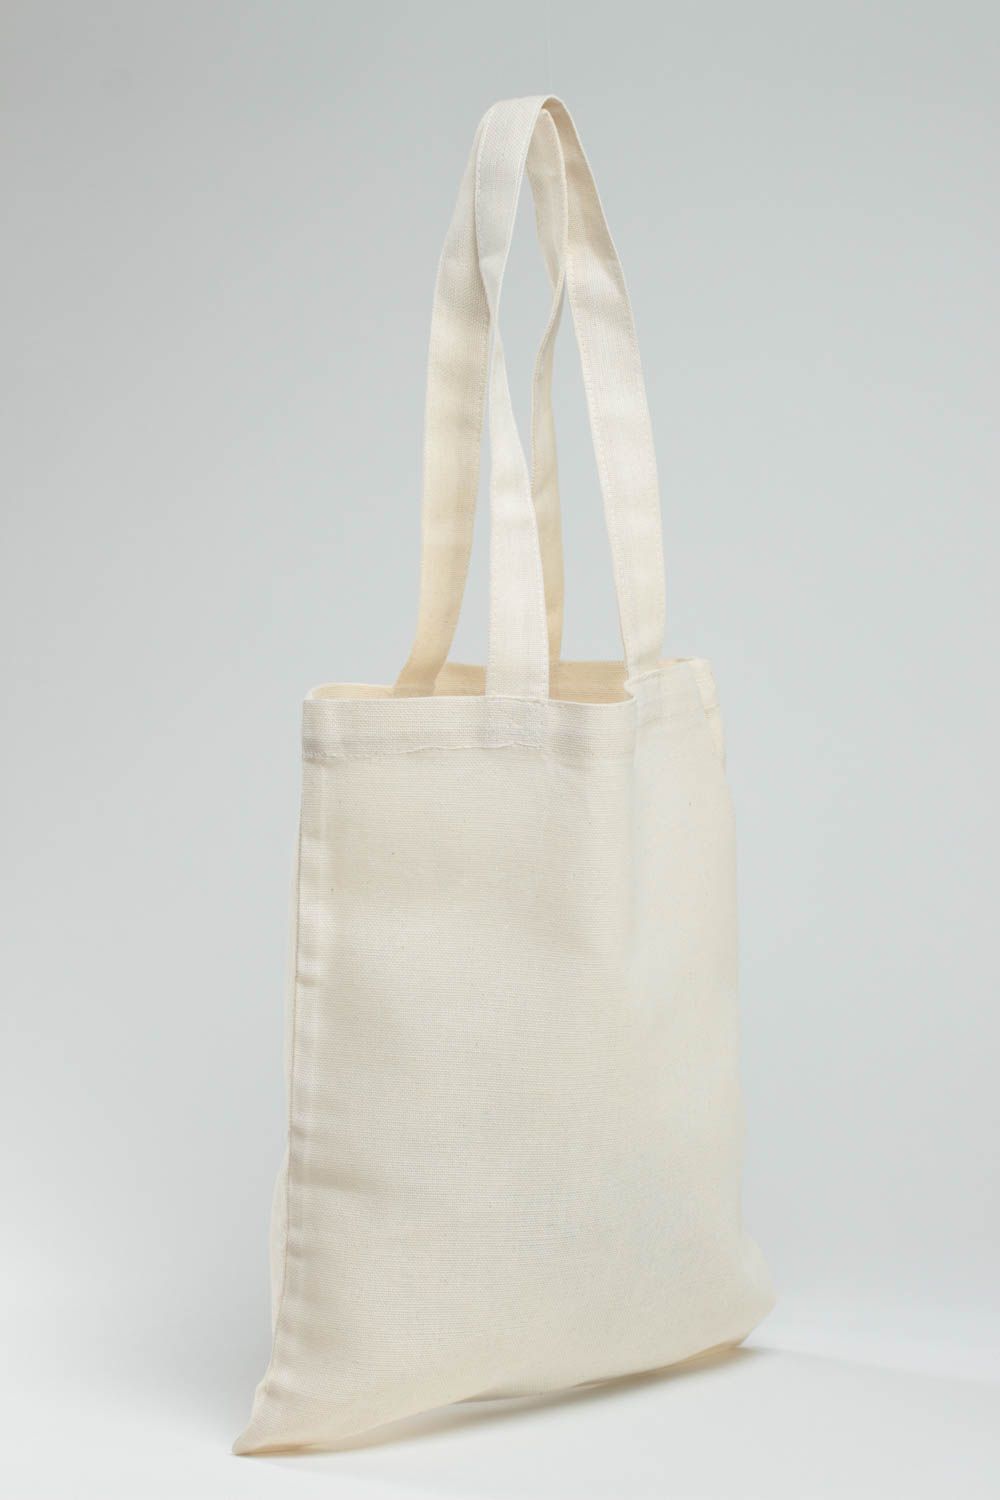 Öko Handtasche aus Stoff in Weiß mit Farben Bemalung handgemacht originell foto 3